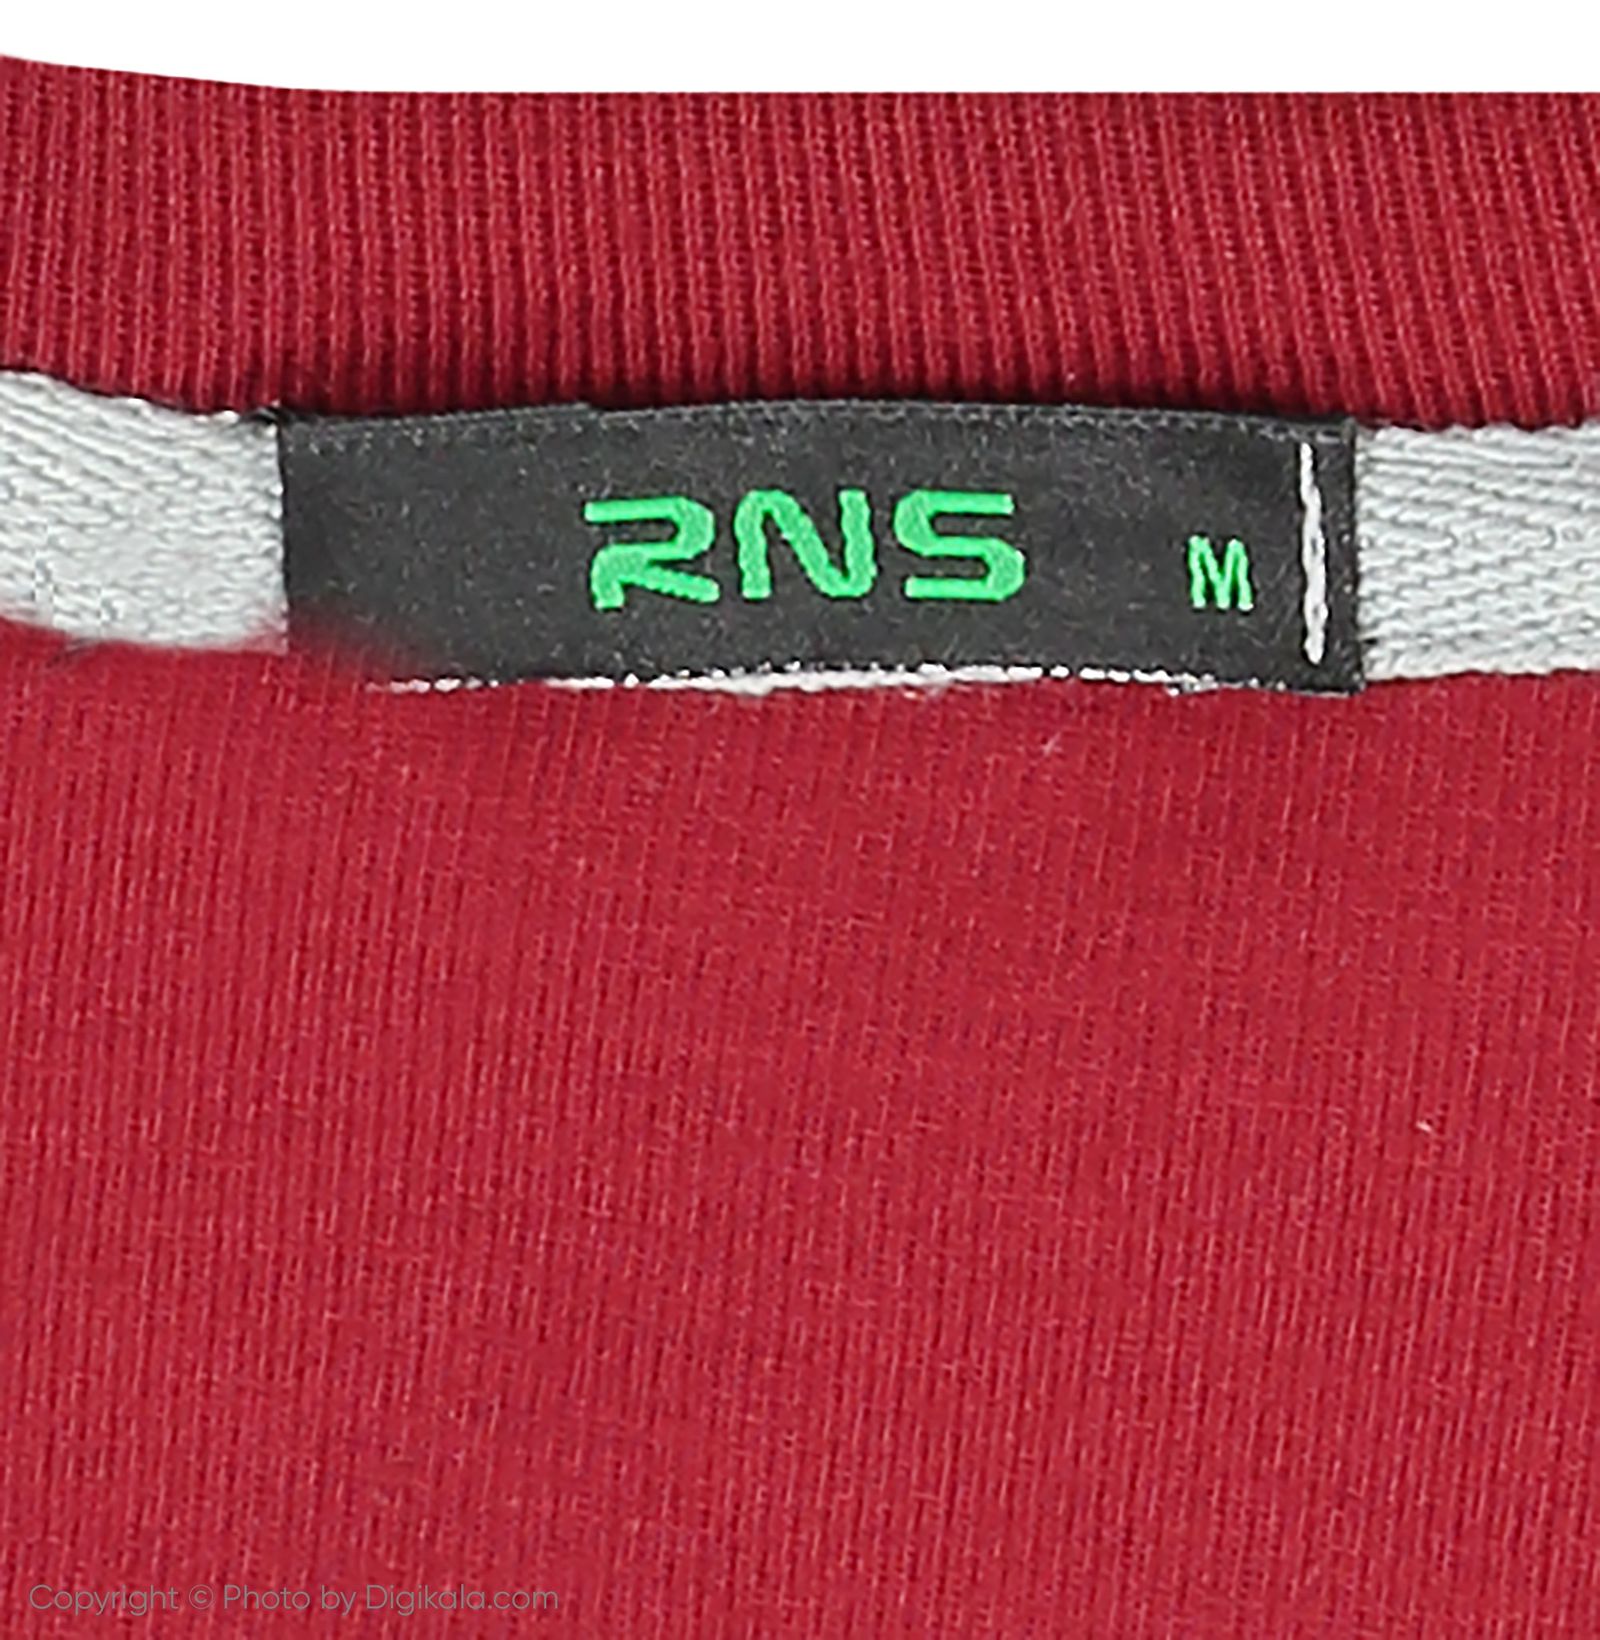 تی شرت مردانه آر ان اس مدل 1132032-70 - زرشکی - 6